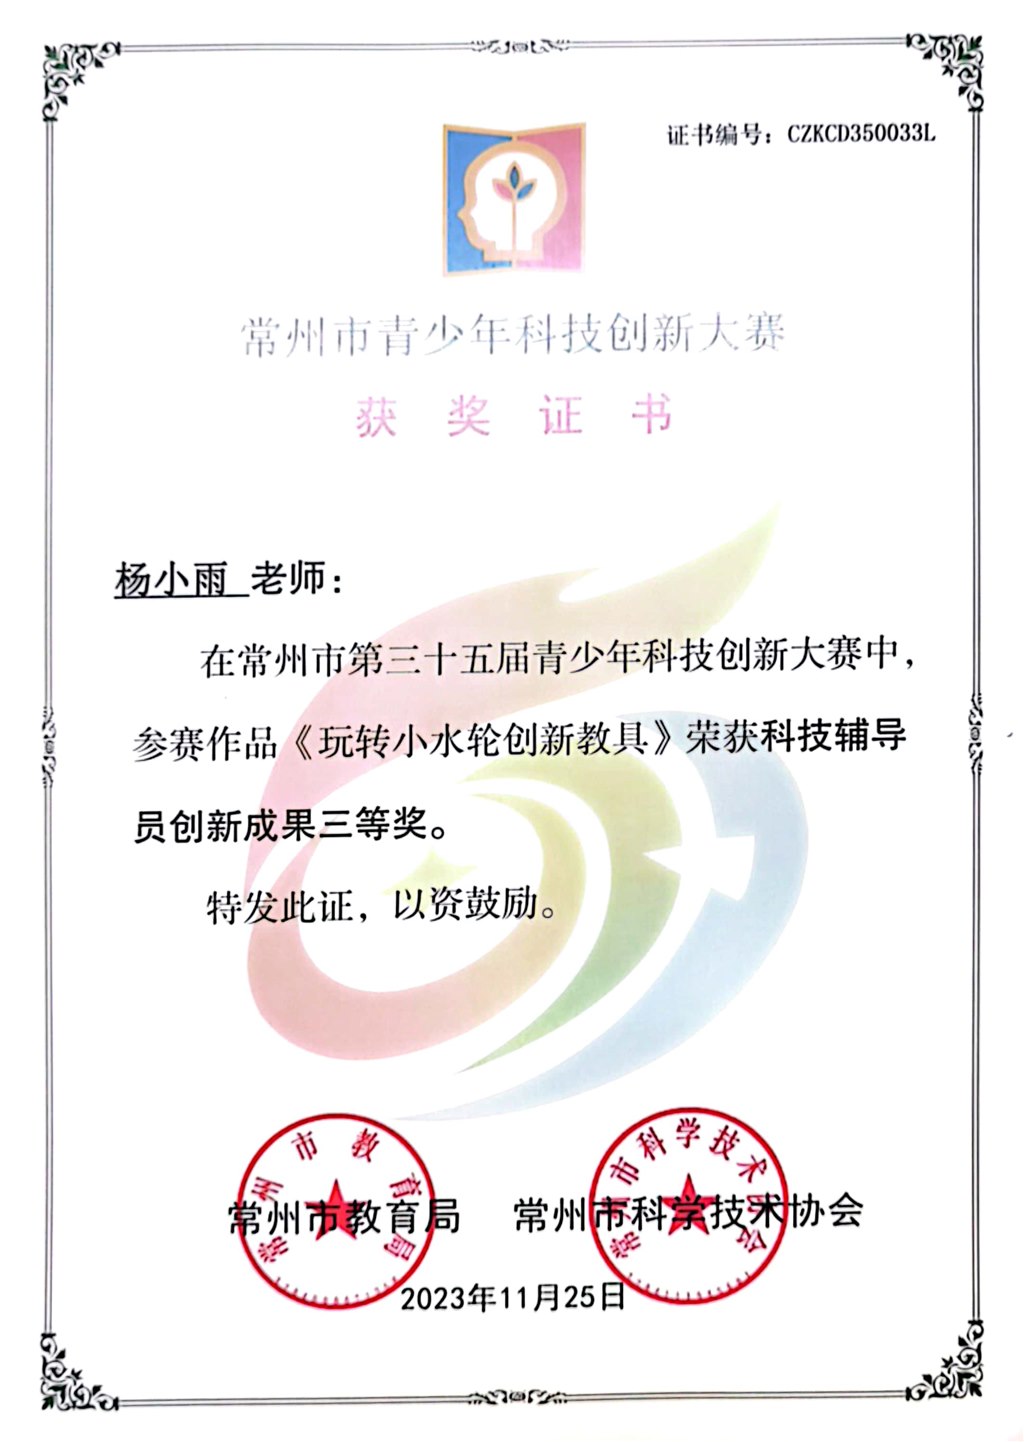 杨小雨 市第三十五届青少年科技创新大赛科技辅导员创新成果三等奖.jpg